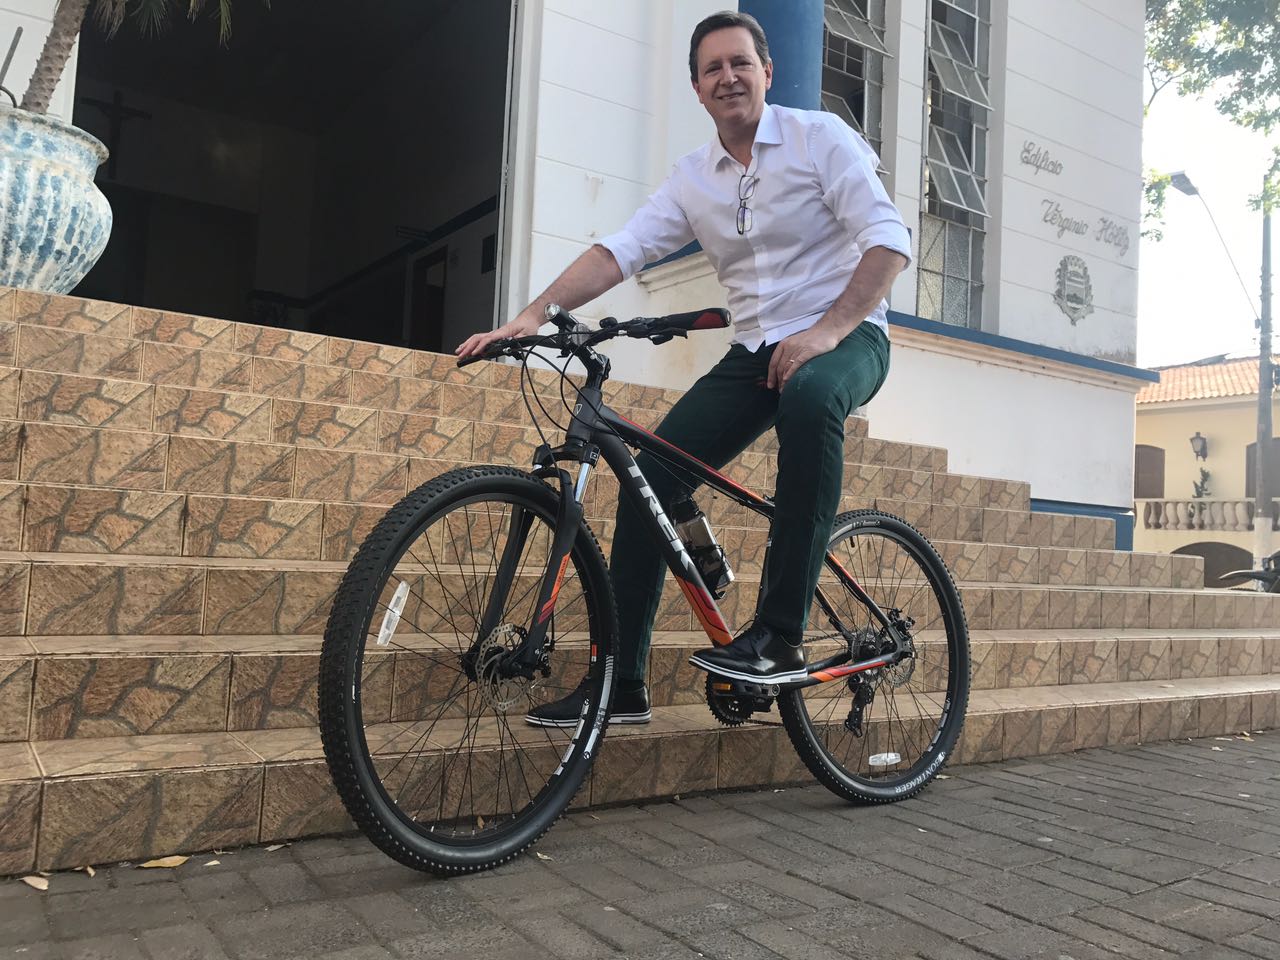 No Dia Mundial Sem Carro, prefeito de Itararé (SP) vai ao trabalho de bicicleta